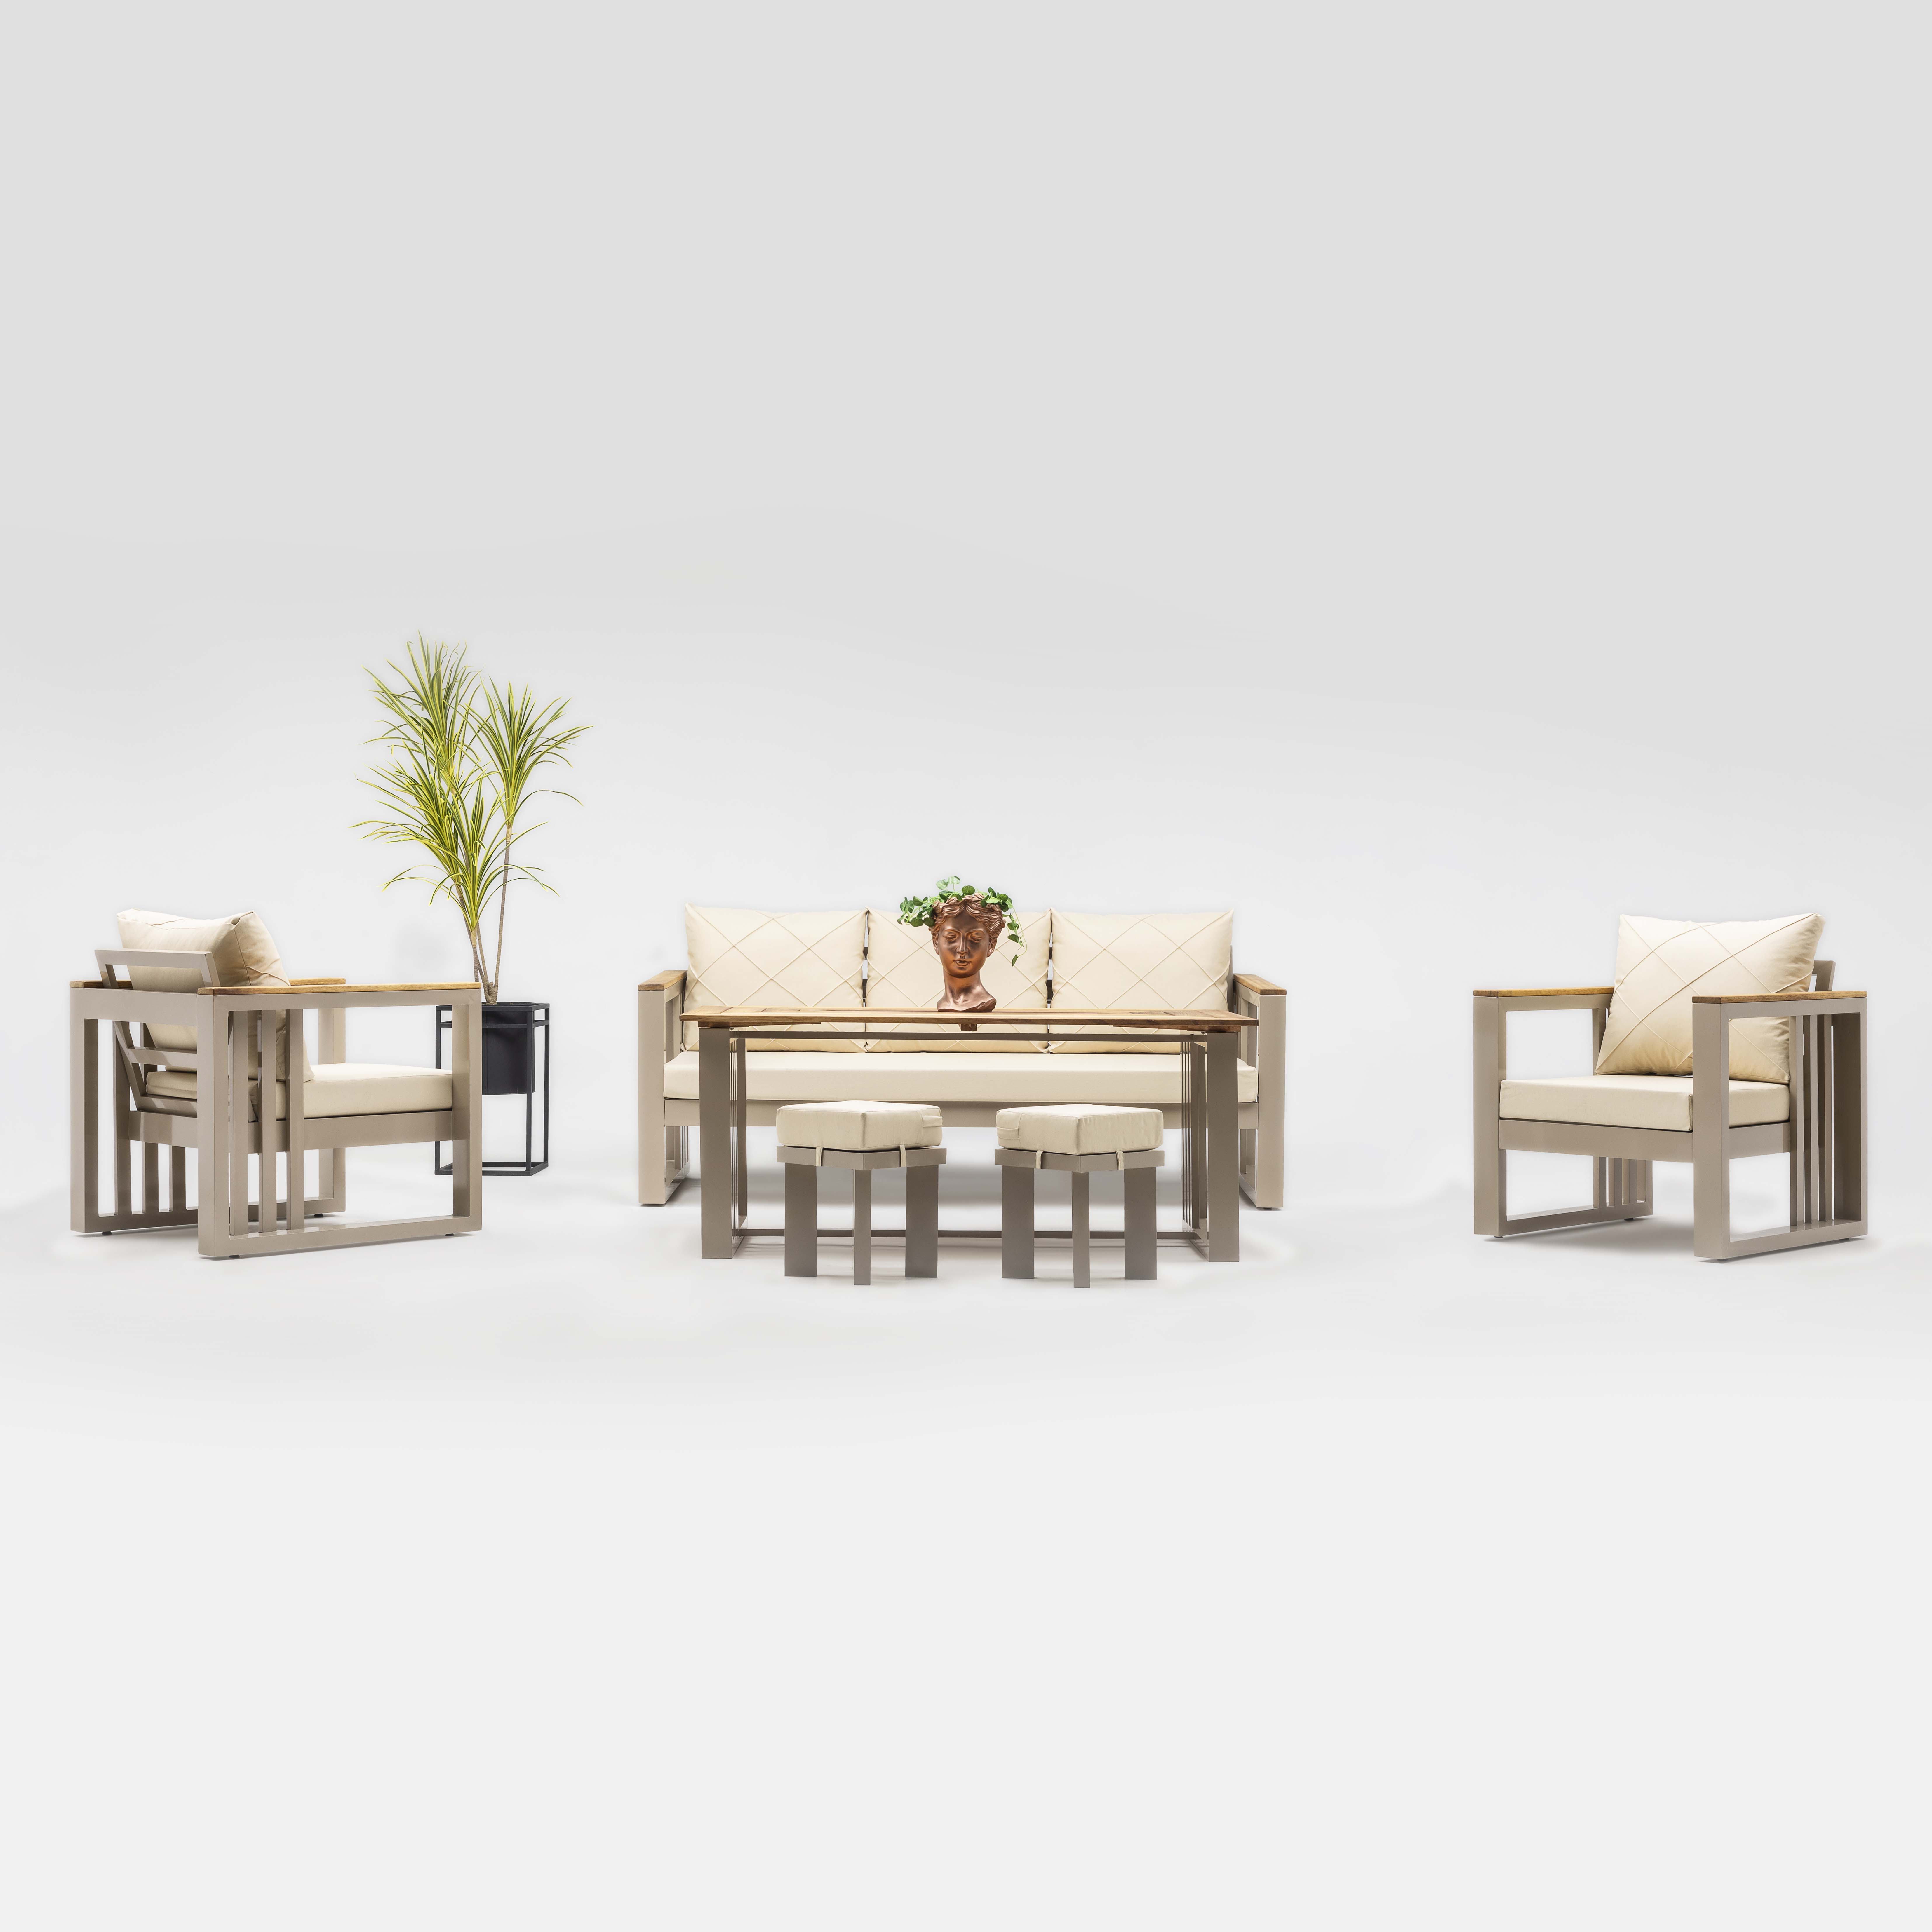 Stilona Royal - Edles Gartenlounge Möbel Set aus pflegeleichtem Aluminium mit hochwertigen Polstern